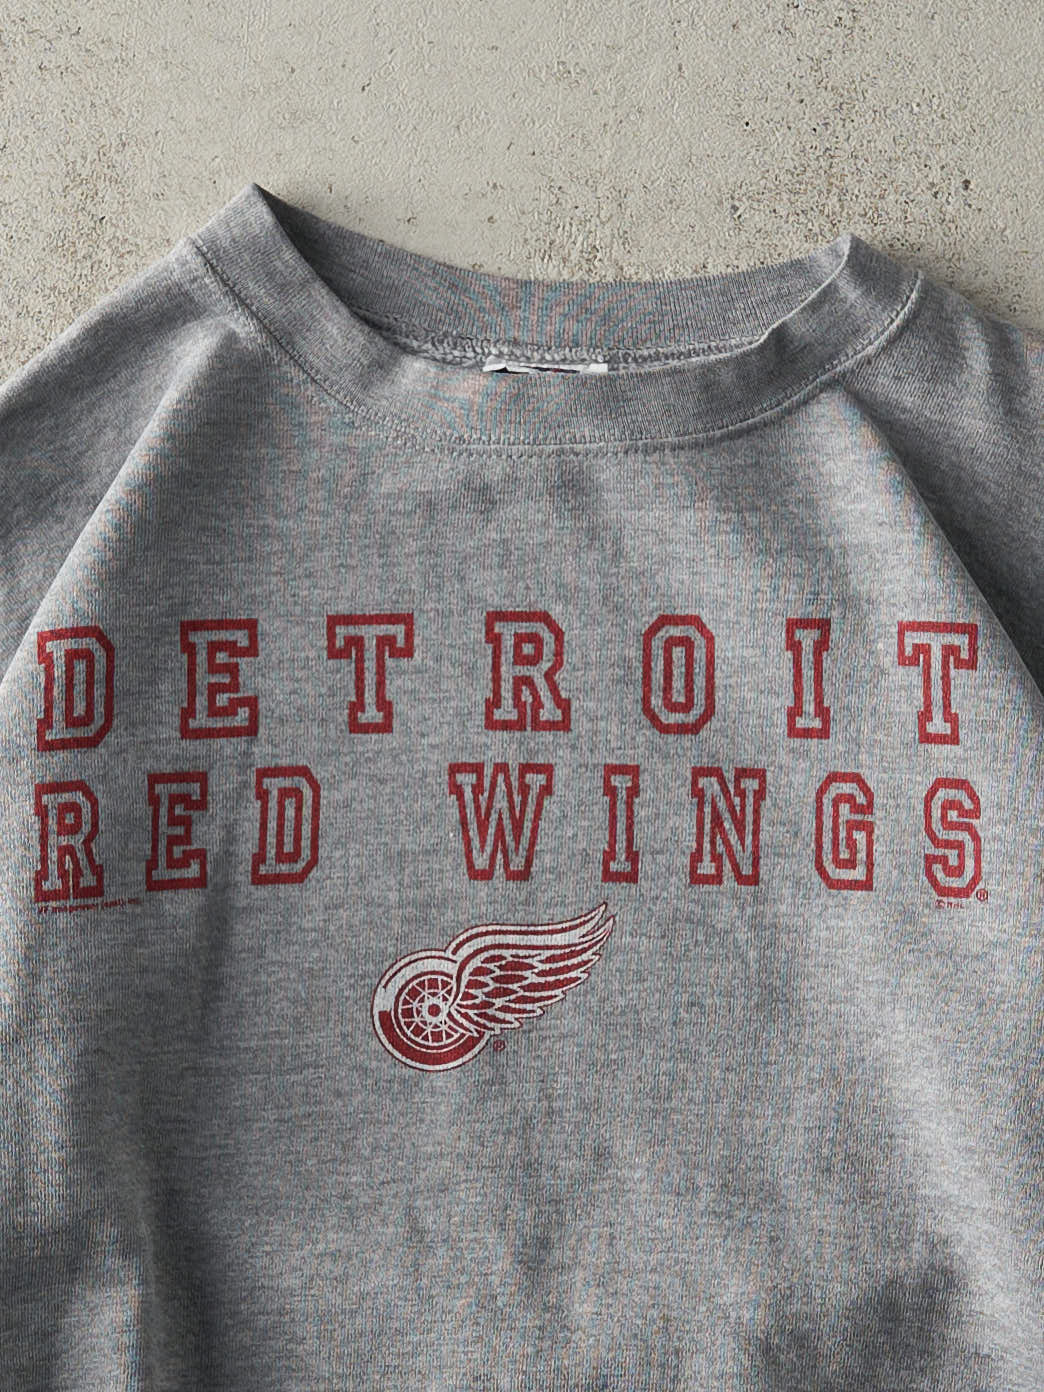 Vintage 90s Grey Detroit Red Wings Crewneck (M)